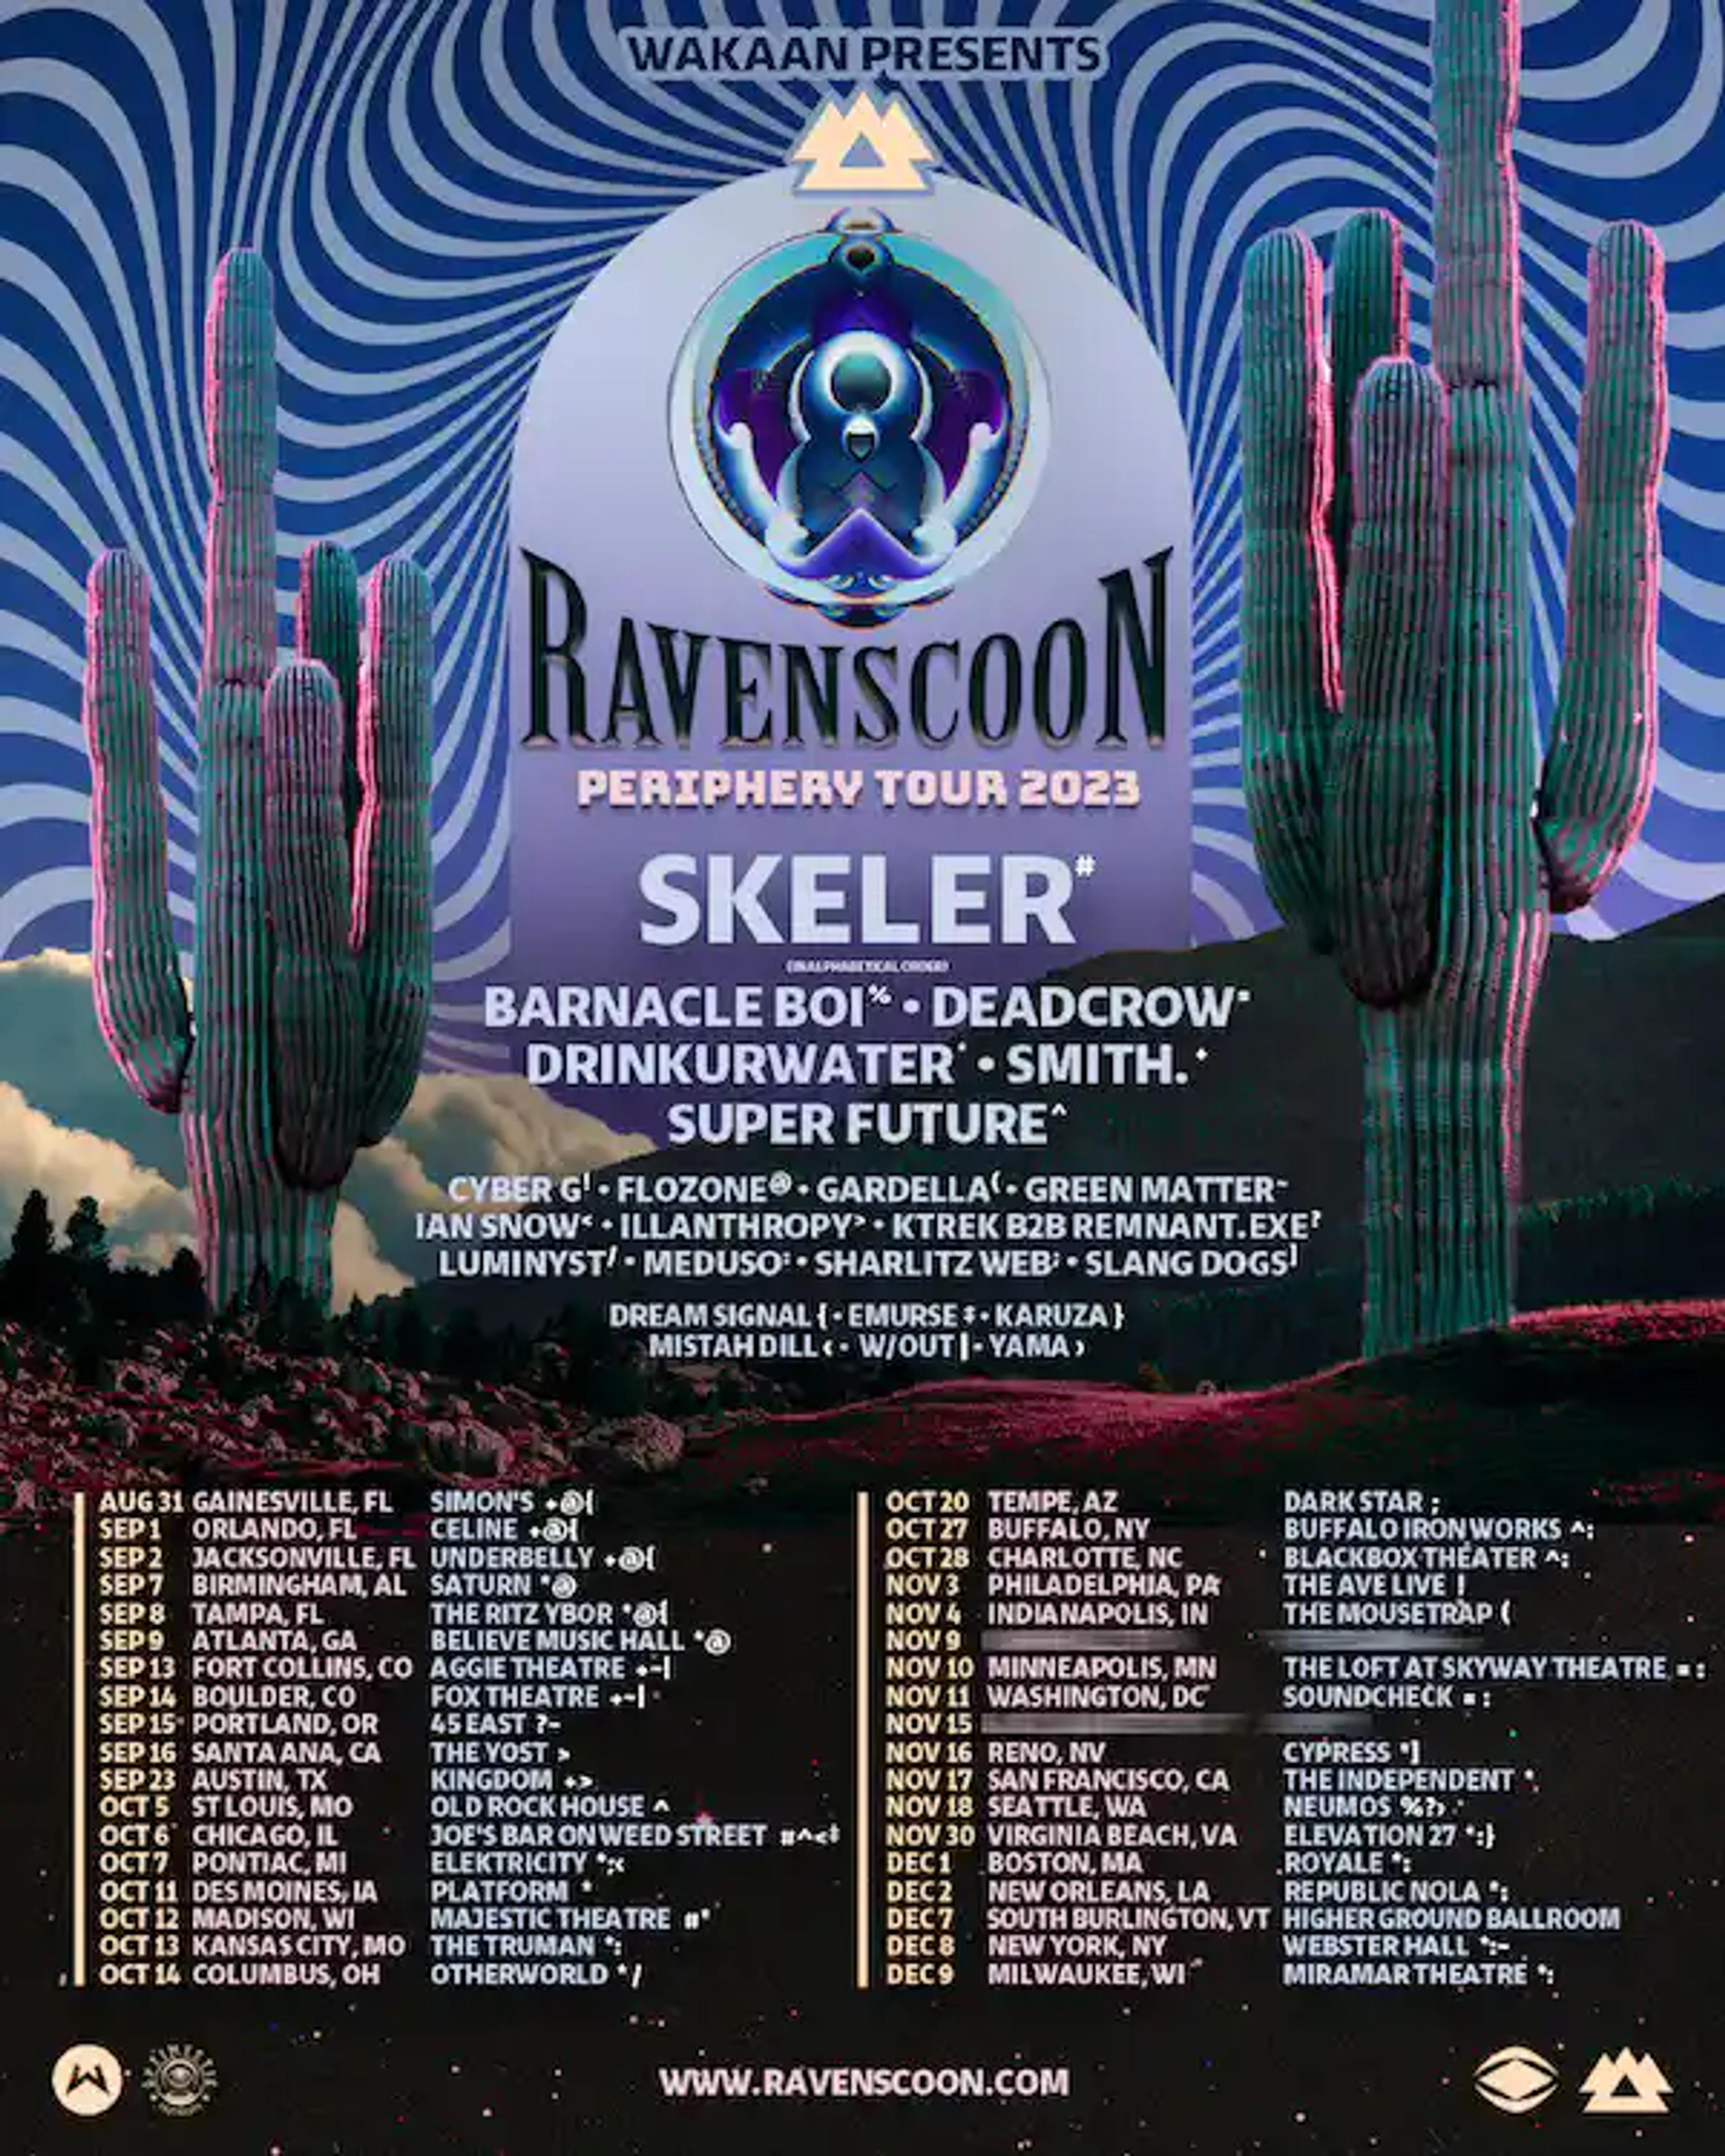 RAVENSCOON - PERIPHERY TOUR 2023